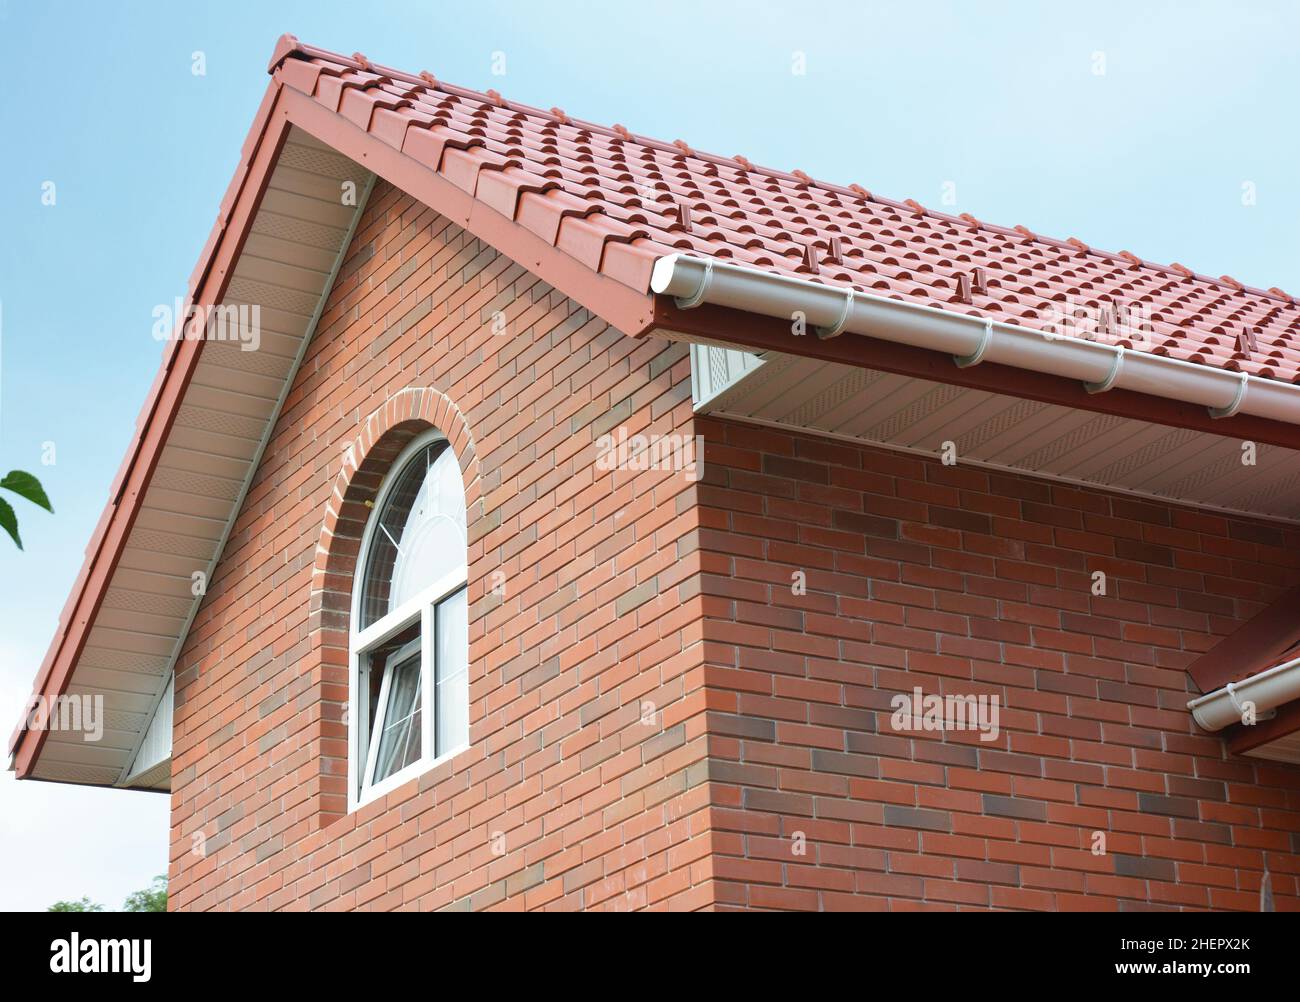 Nahaufnahme der Dachkonstruktion des Ziegelhauses mit Keramikfliesen Stockfoto